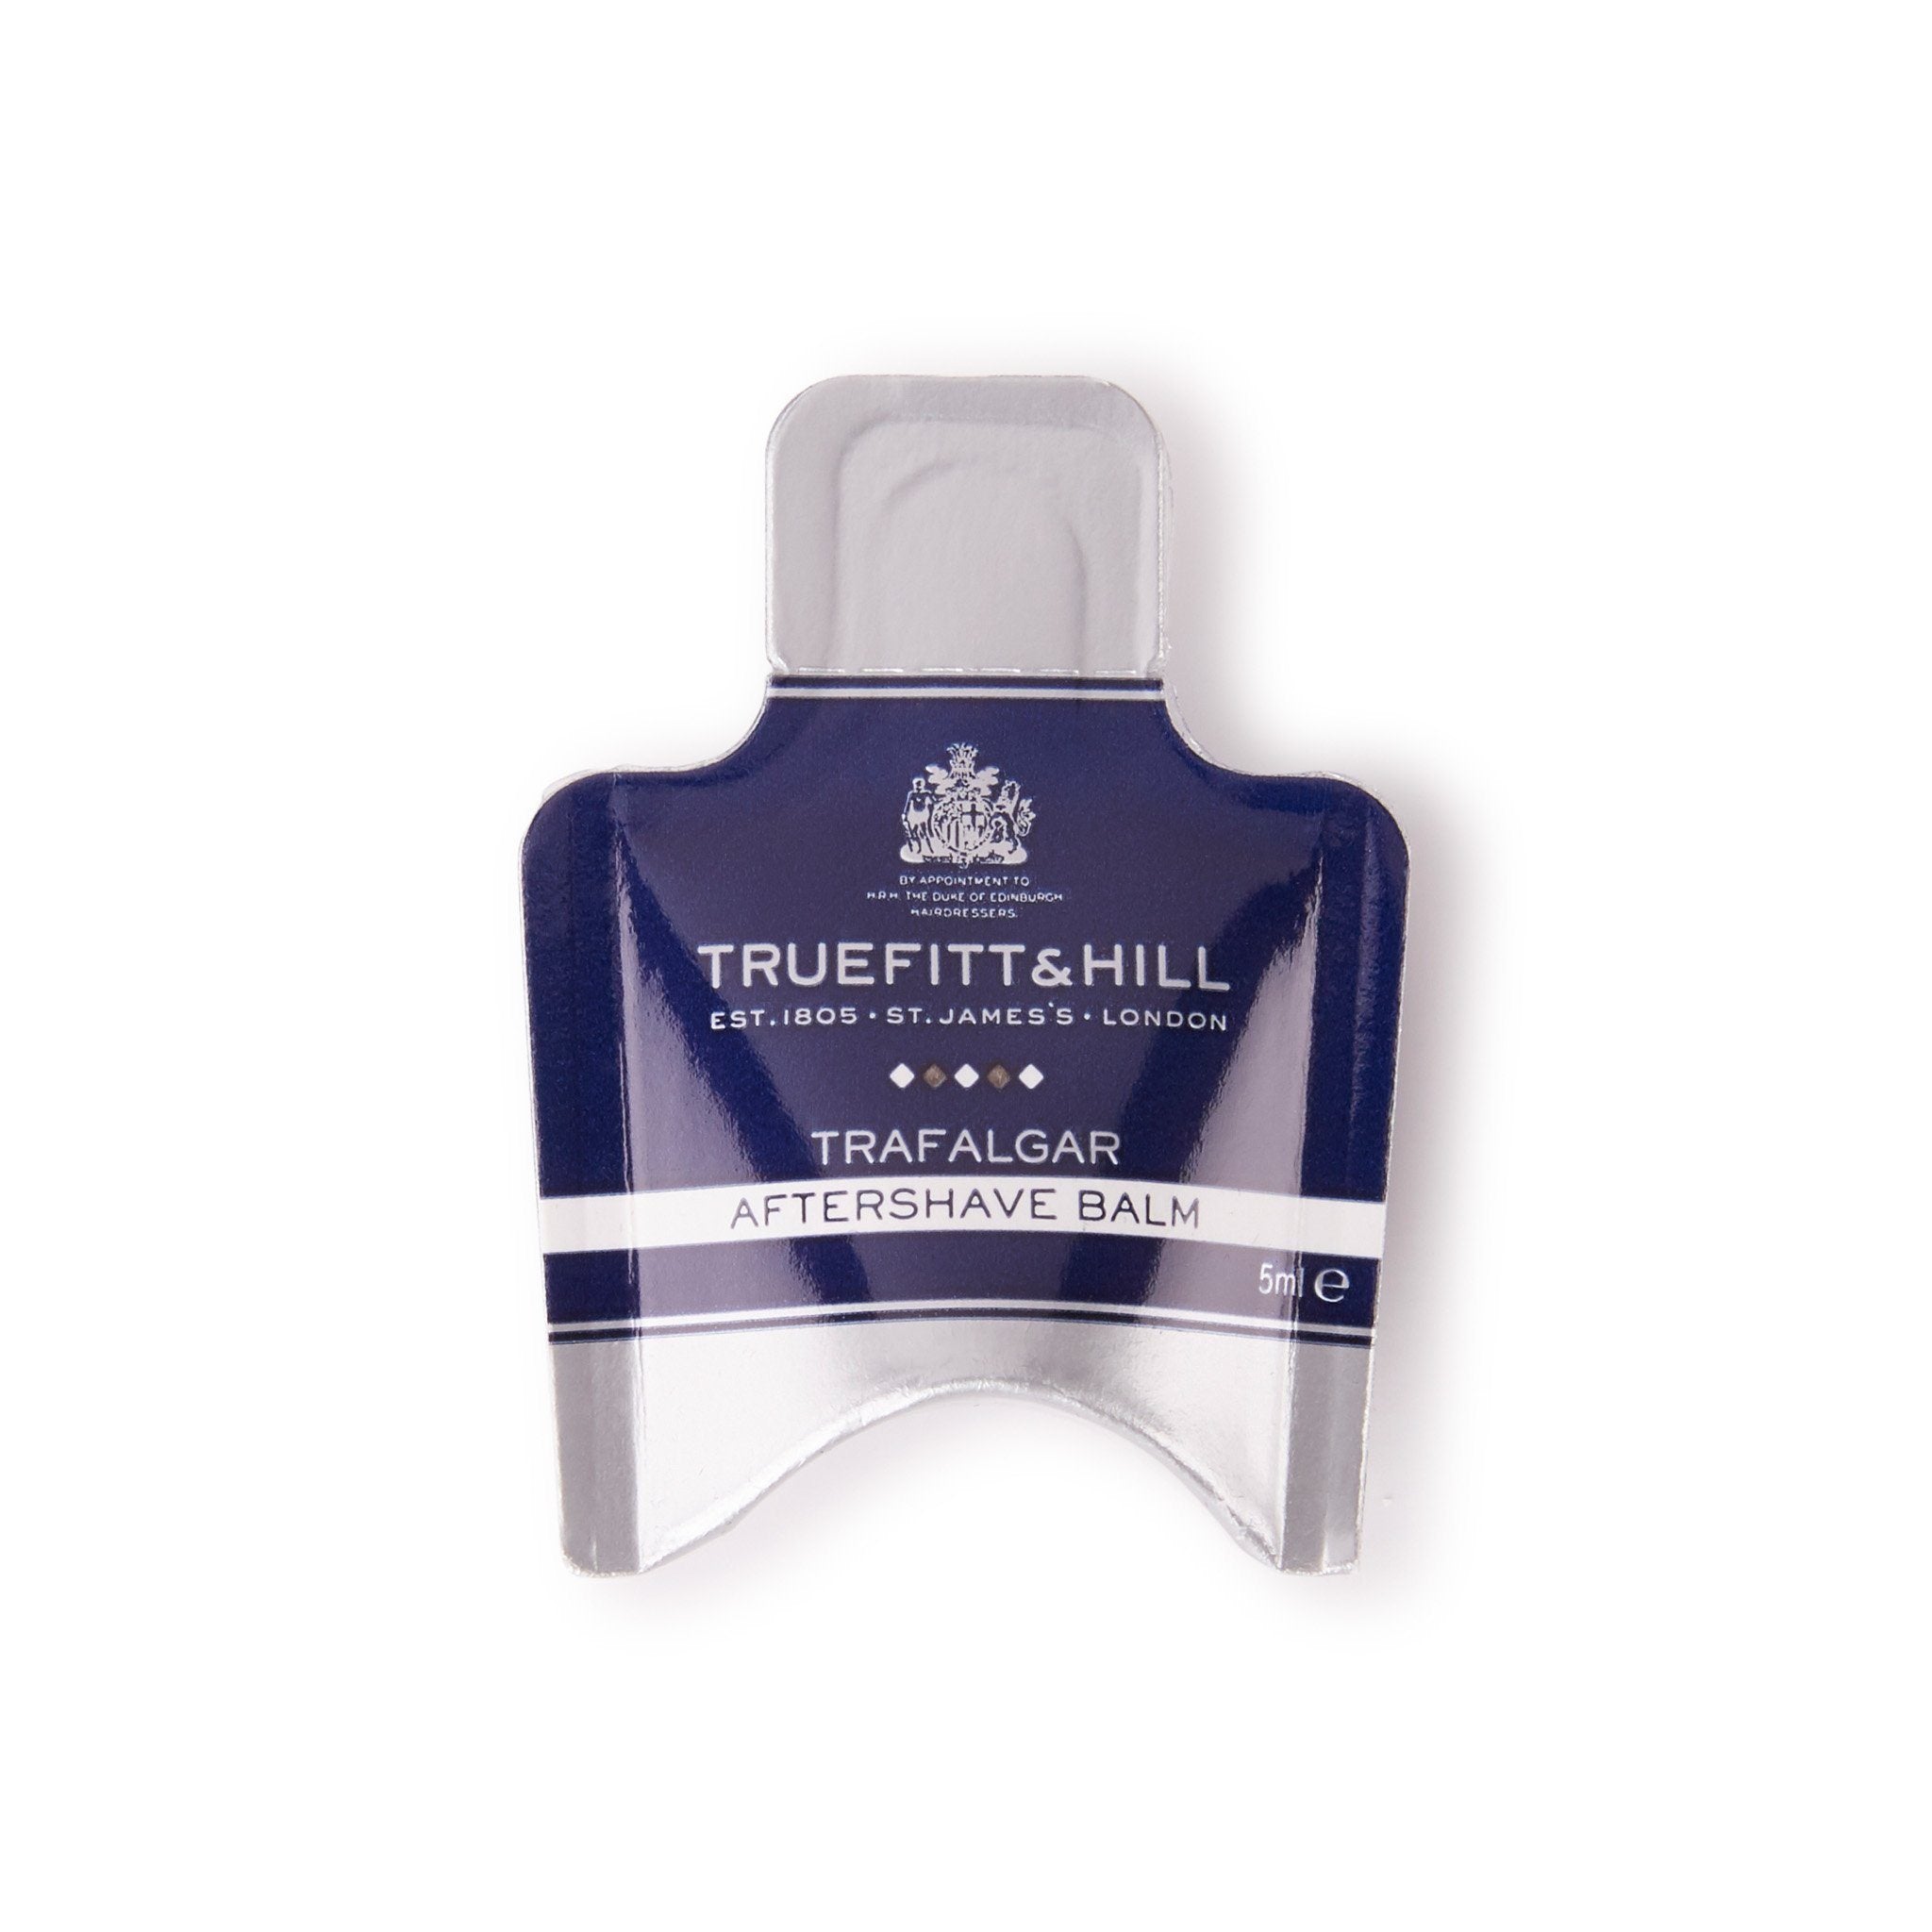 Truefitt & Hill Aftershave Balm vareprøve Trafalgar